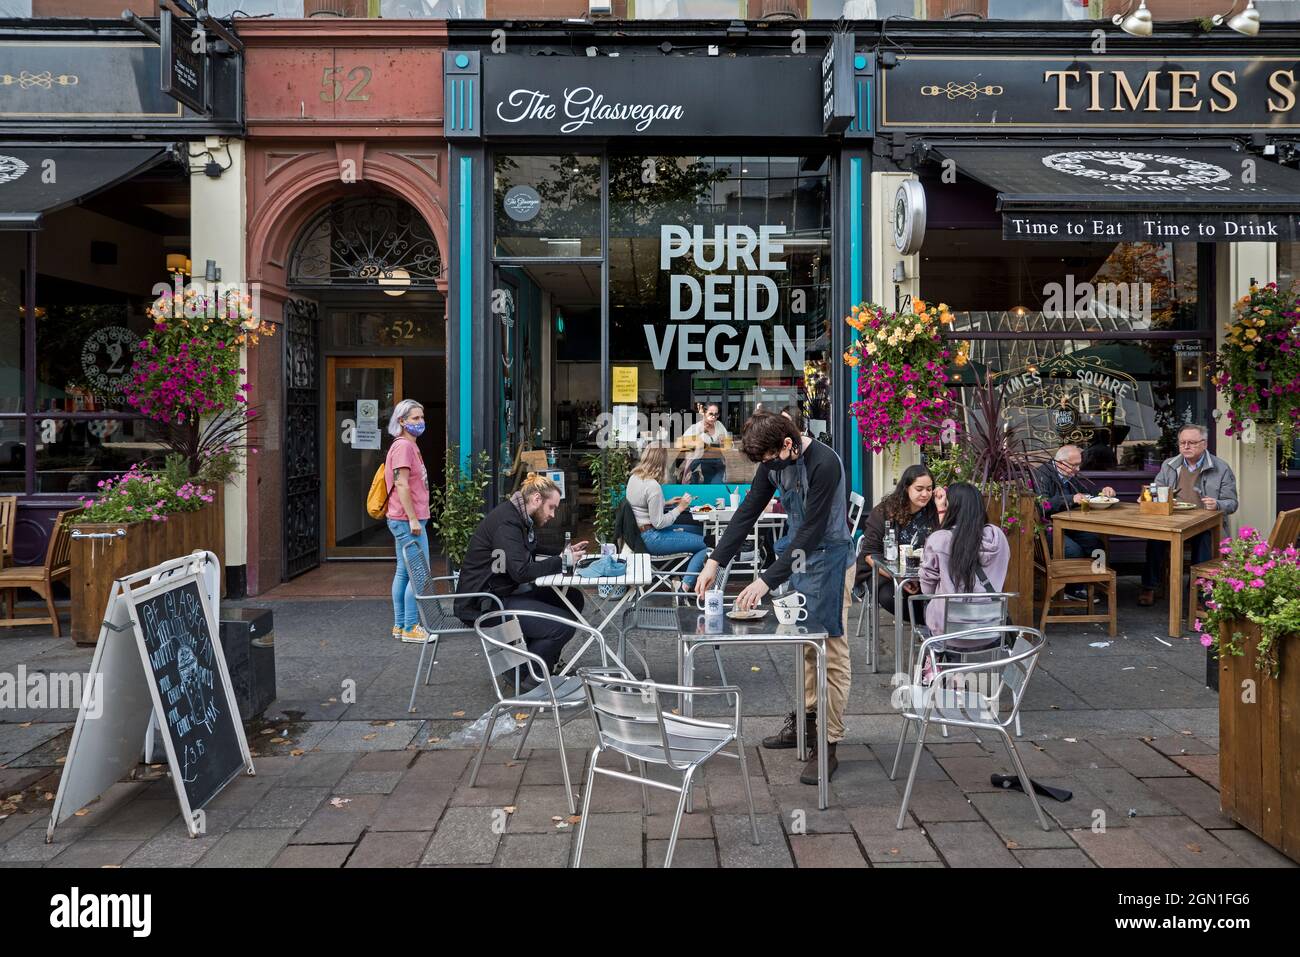 Clients assis à l'extérieur du Glasvegan, un café-restaurant vegan à St Enoch Square, Glasgow, Écosse, Royaume-Uni. Banque D'Images